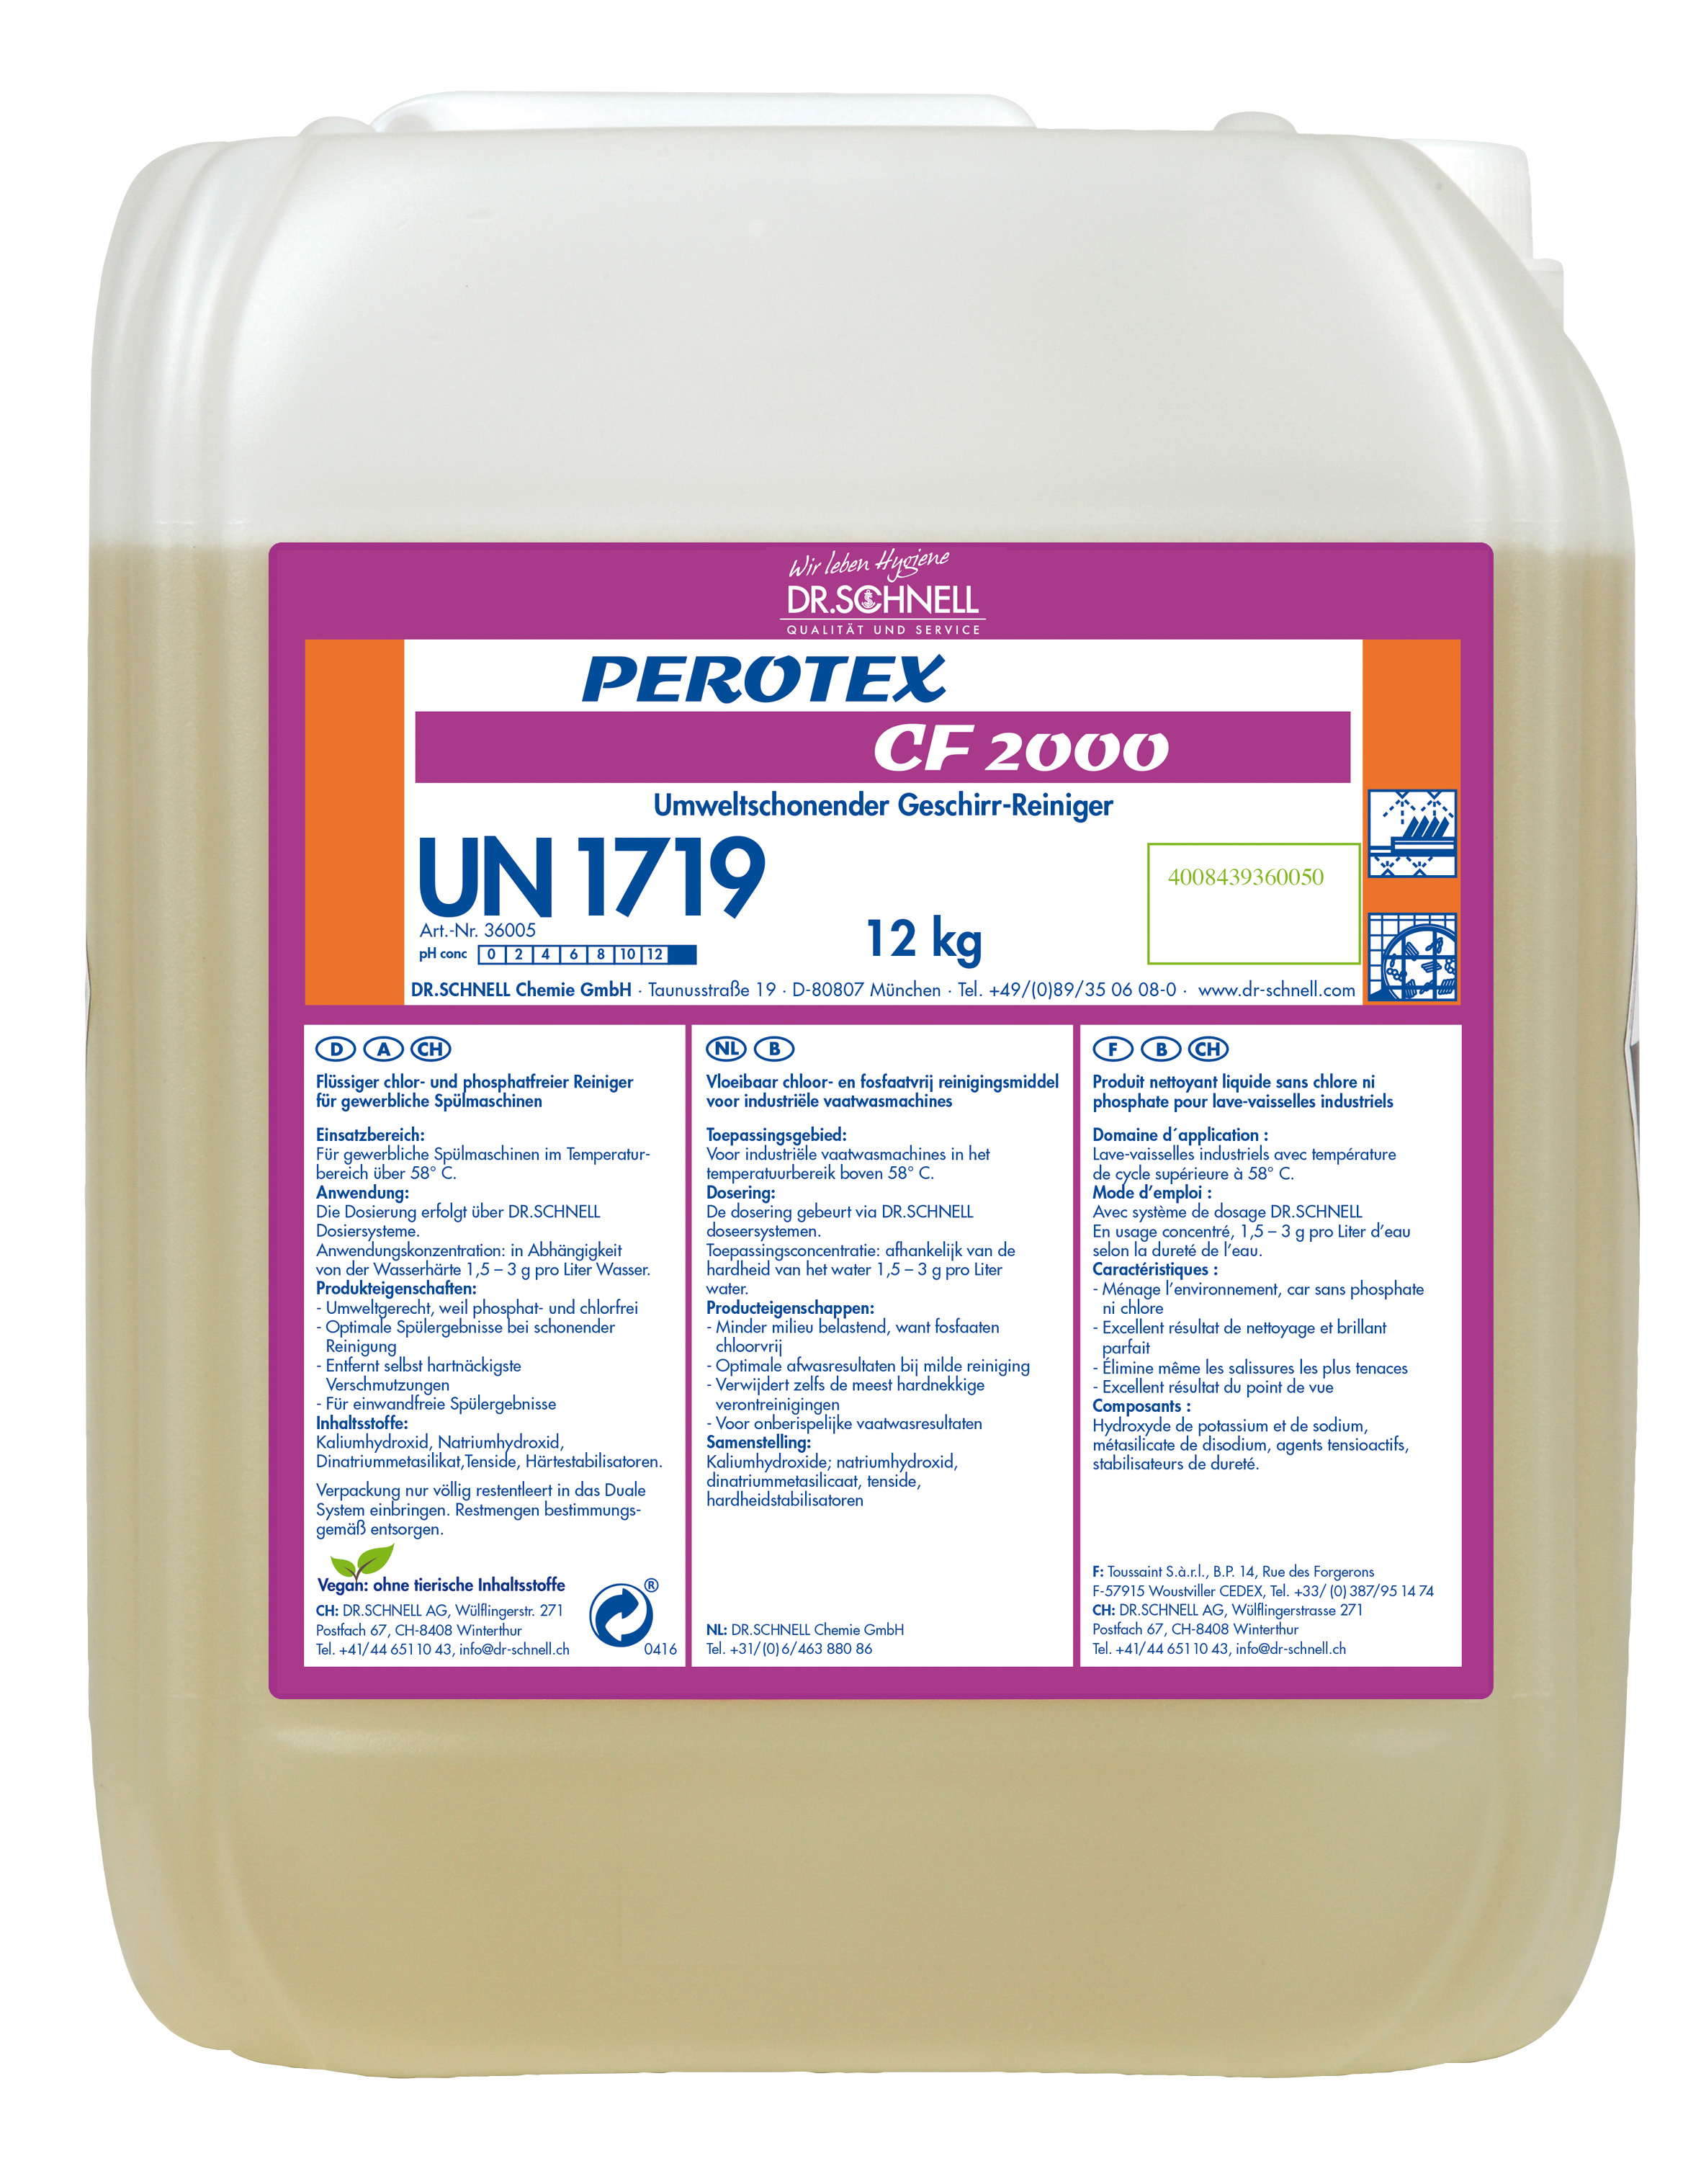 PEROTEX CF 2000 chlorfrei 12 kg,,Geschirrspülreiniger, Dr. Schnell